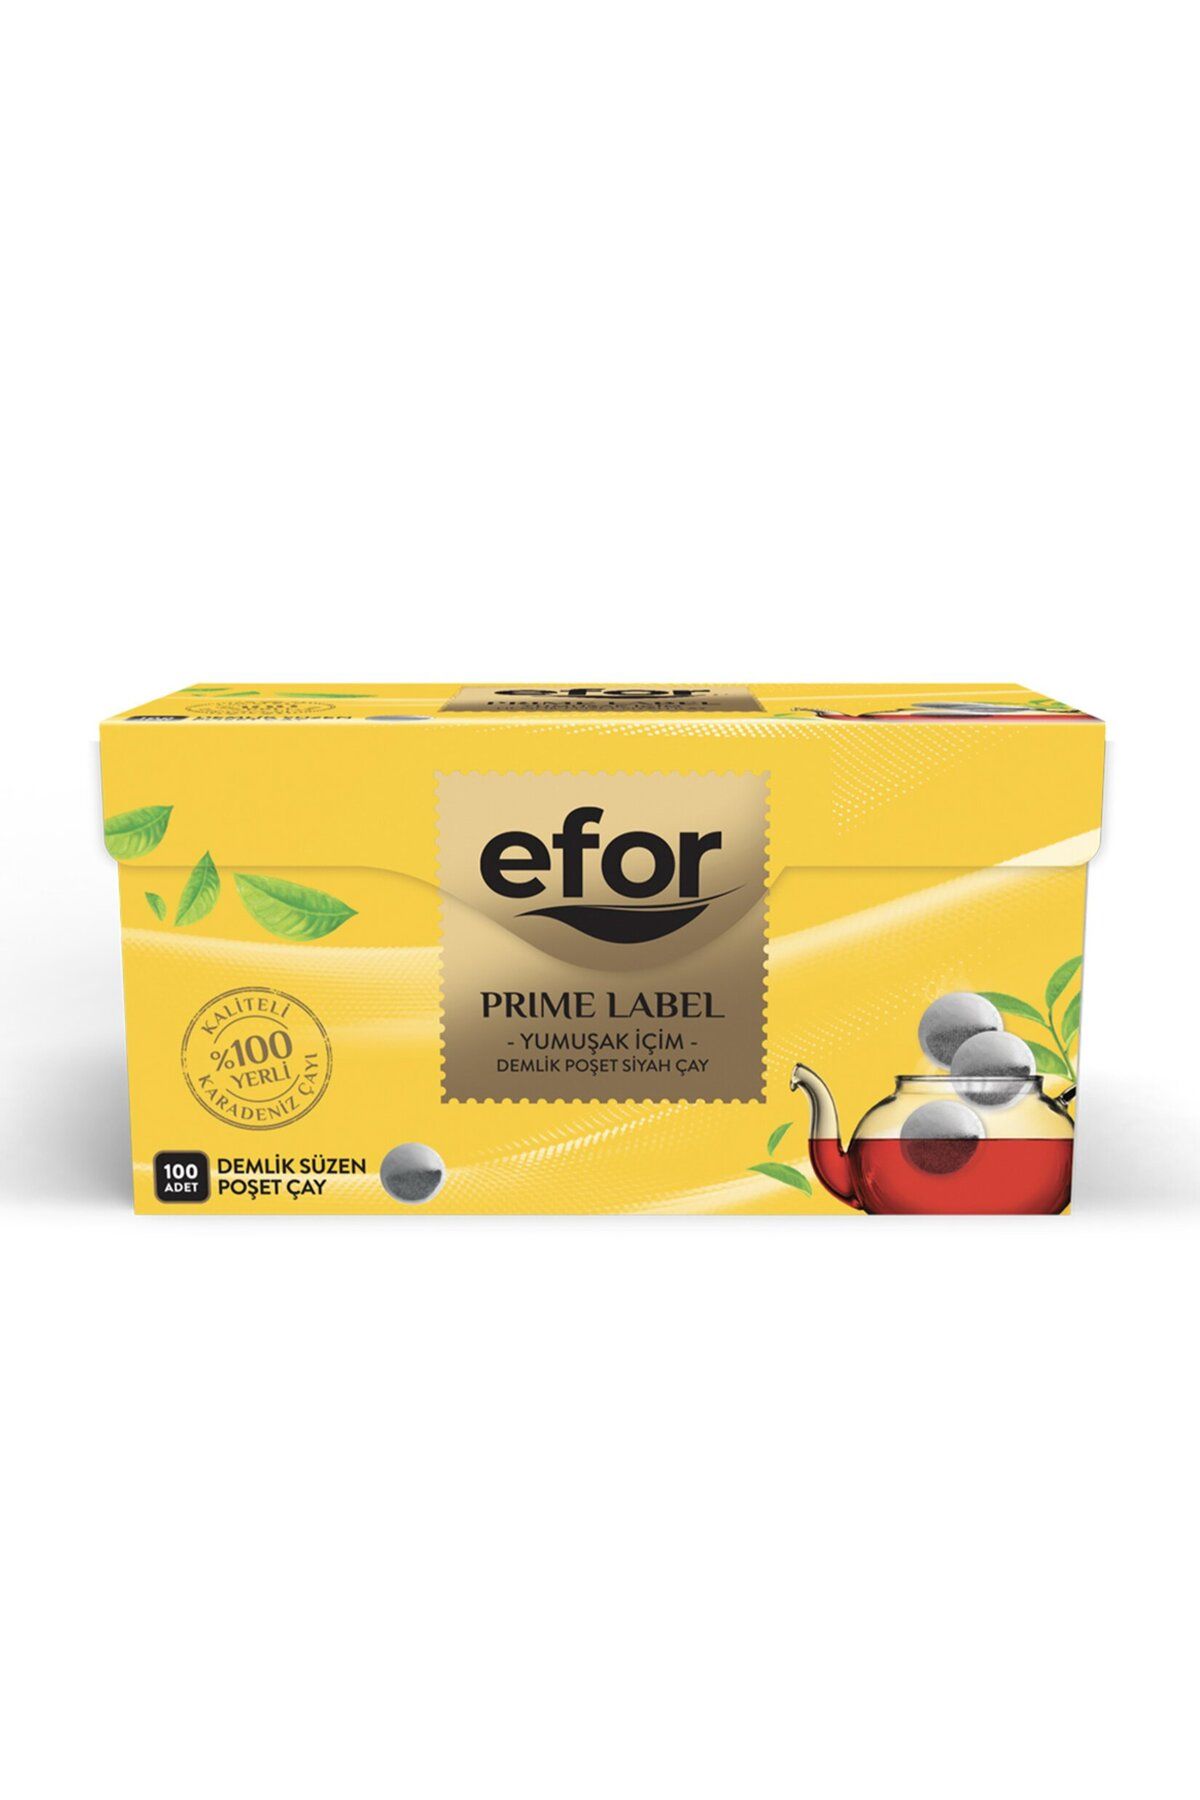 Efor Prıme Label Demlik Süzen Poşet Çay 100'lü / 320 G